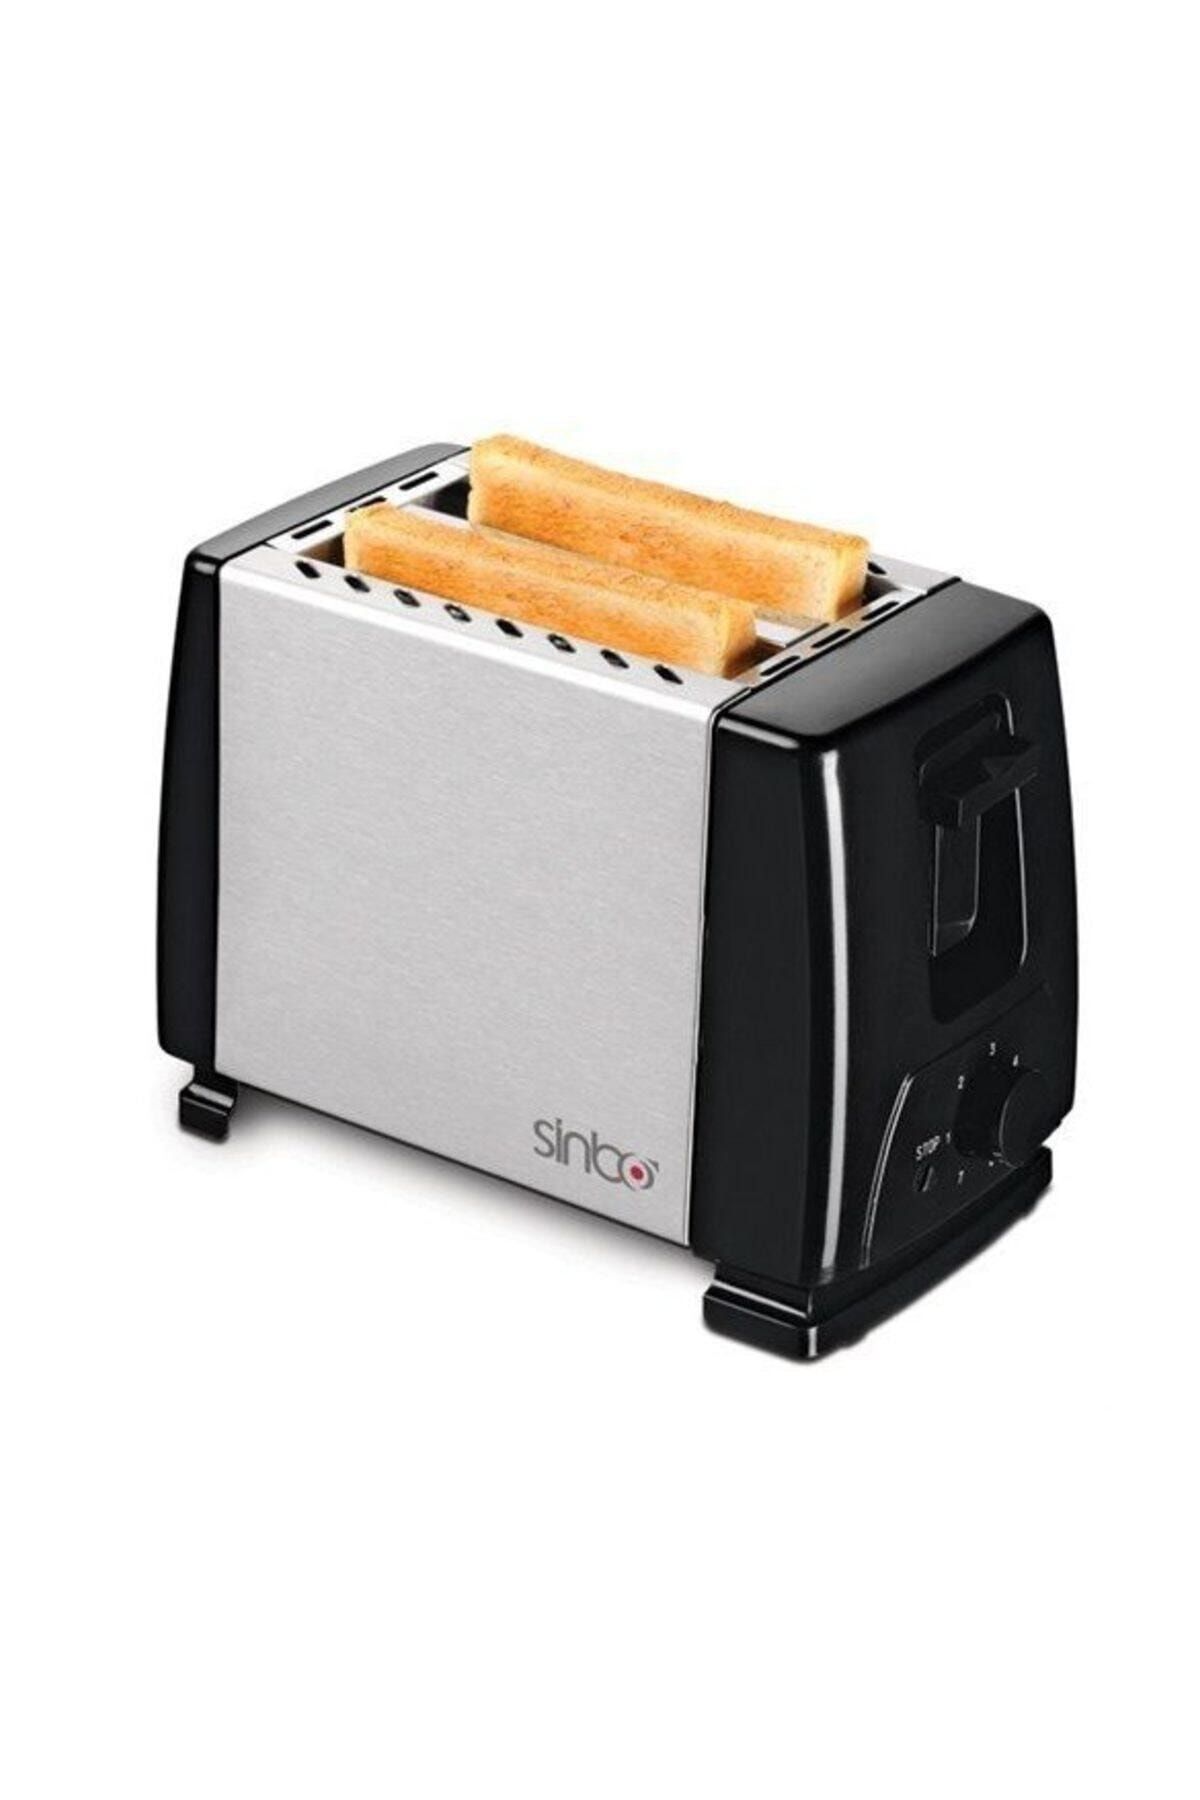 Sinbo Ekmek Kızartma Makinesi St-2416